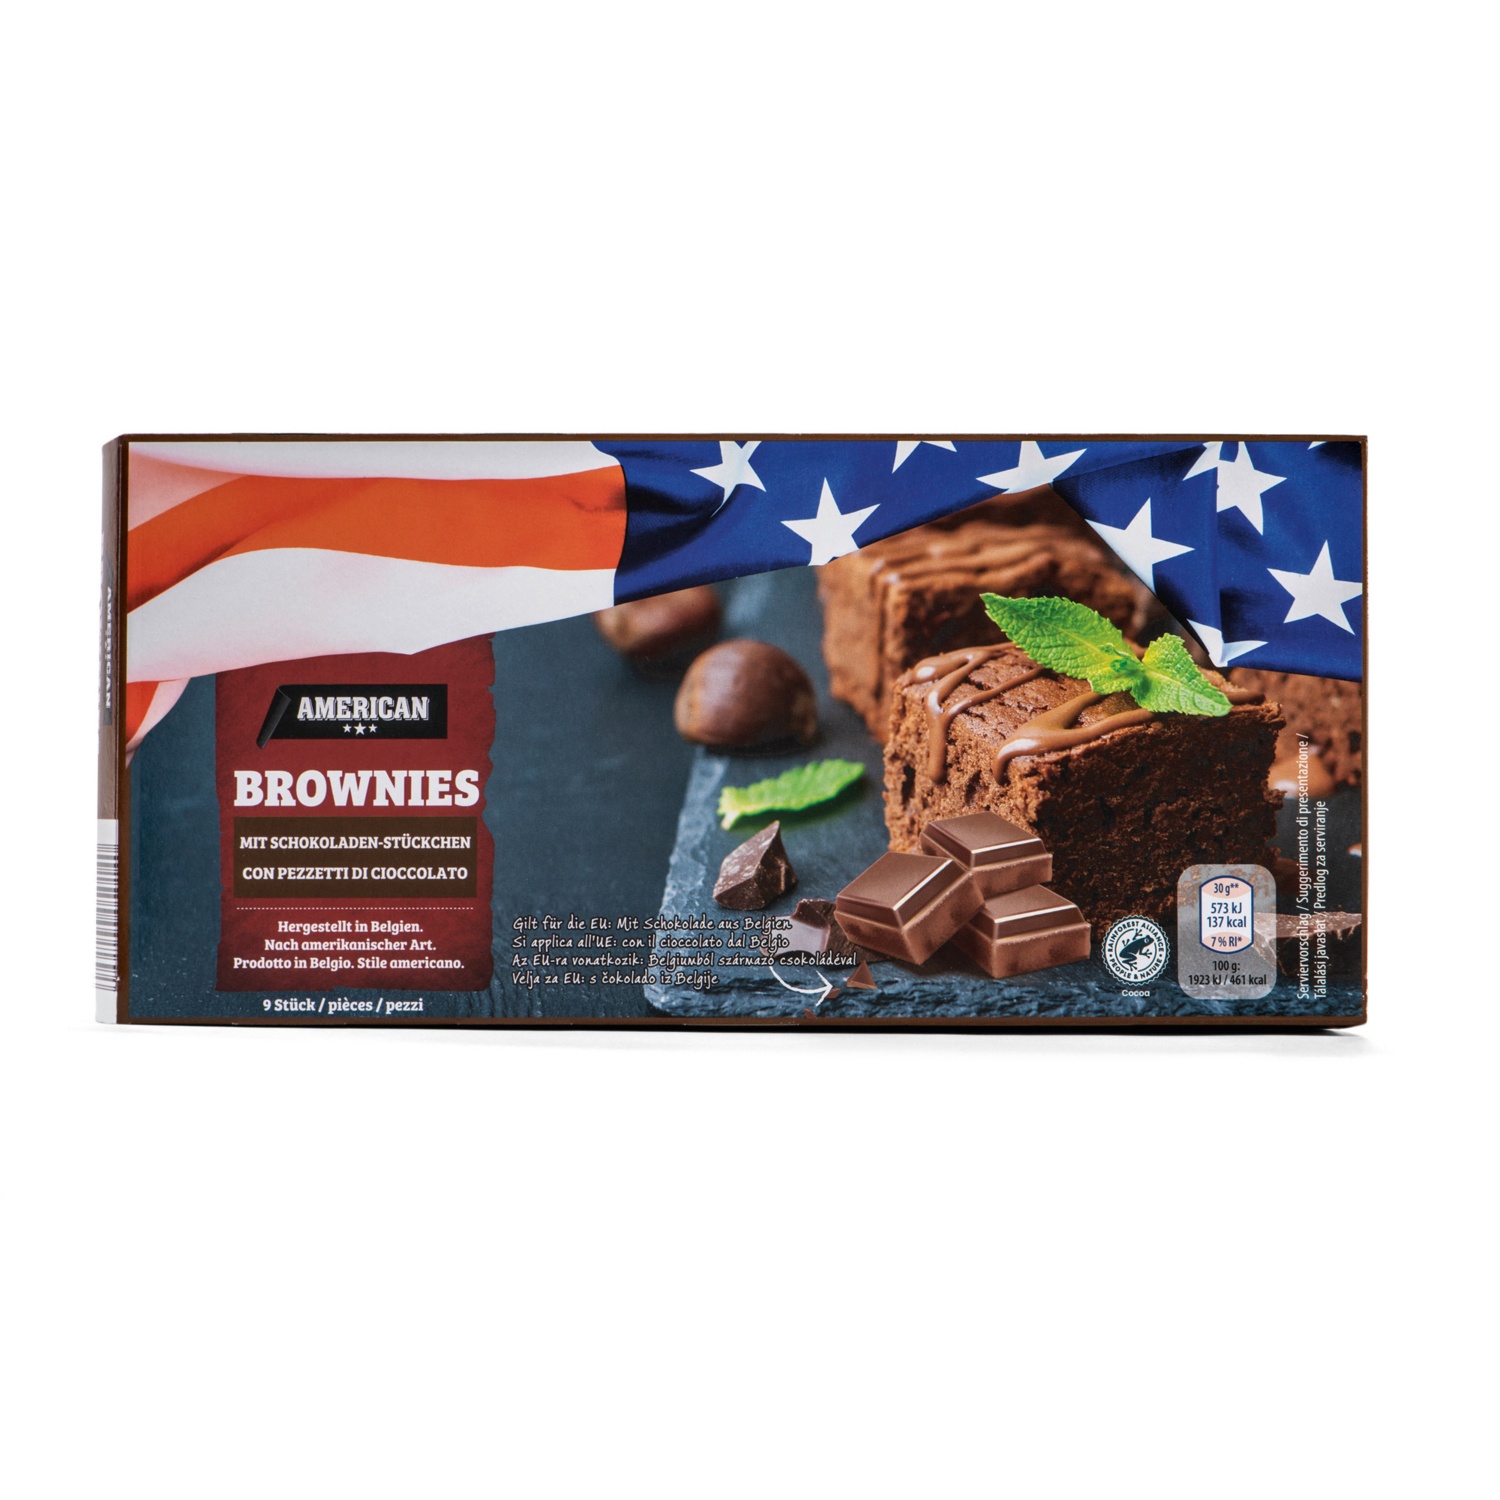 AMERICAN Brownies, Schoko